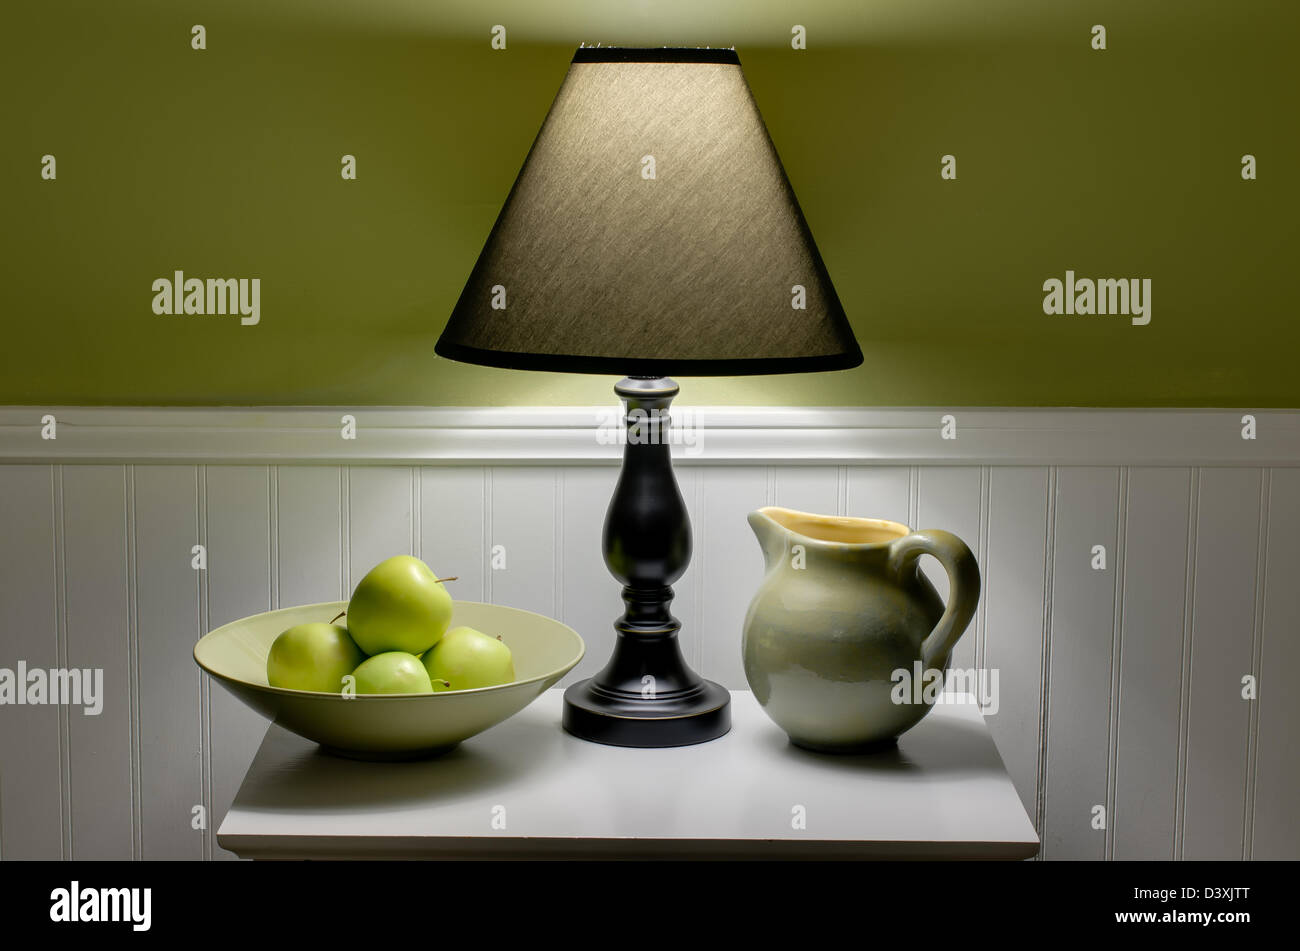 Schüssel mit grünen Äpfeln, Lampe und Krug auf den Tisch. Szene wird nur durch weiches Licht aus Lampe beleuchtet. Stockfoto